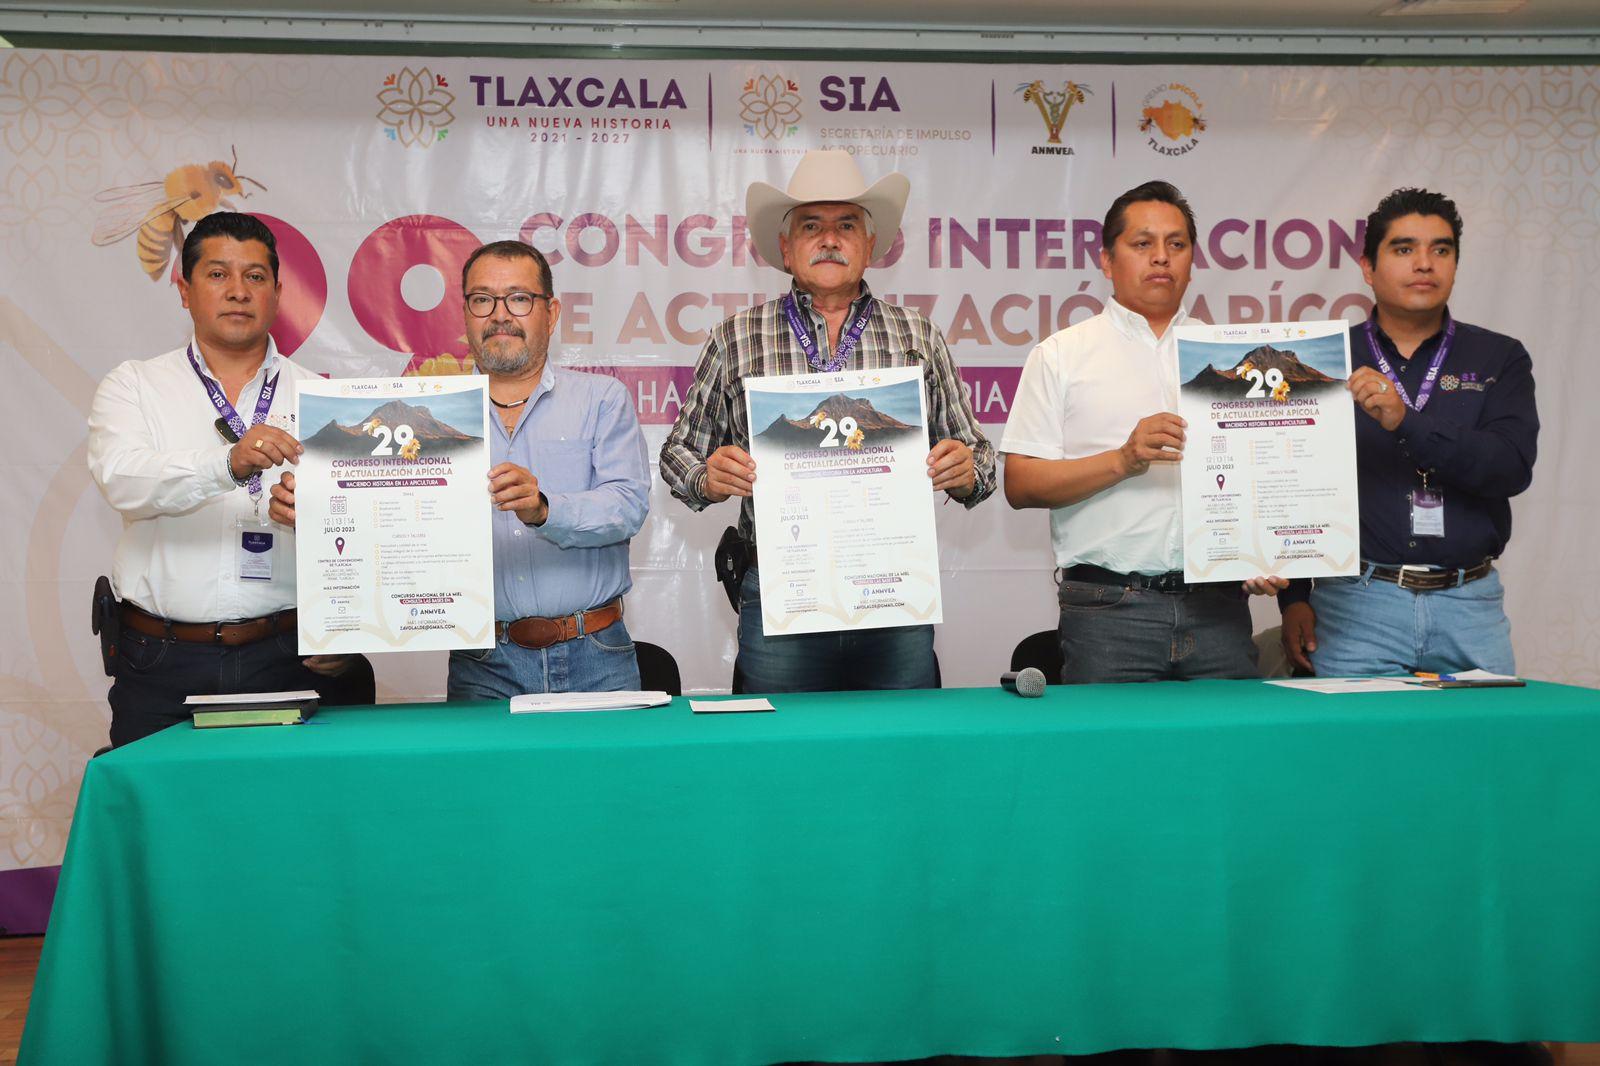 Tlaxcala será sede del XXIX Congreso Internacional de Actualización Apícola